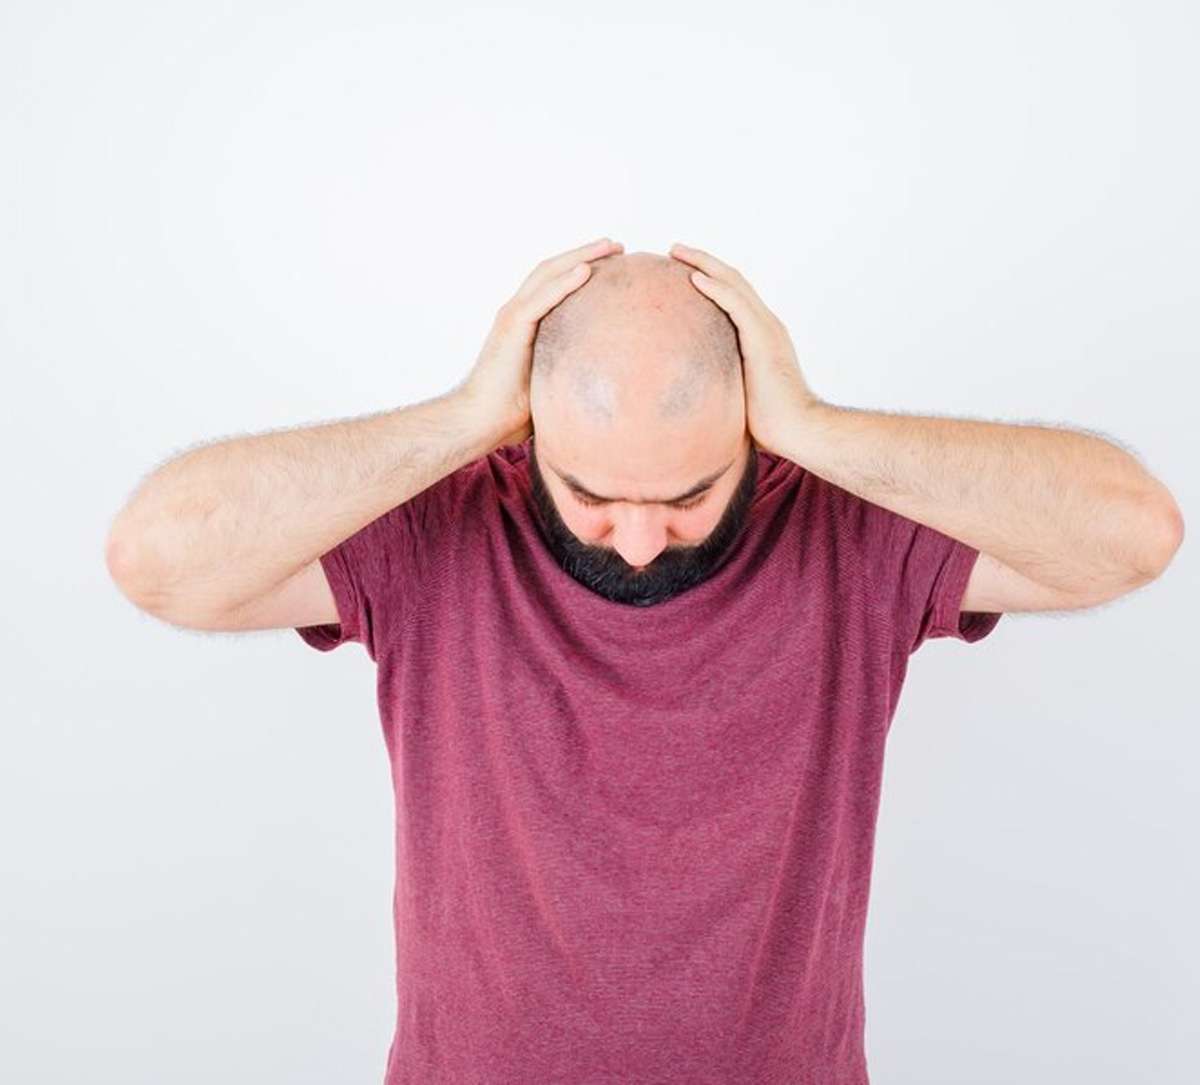 पुरुषों में बाल झड़ने और गंजेपन की समस्या को जड़ से खत्म करें इन 5 घरेलू नुस्खों
से